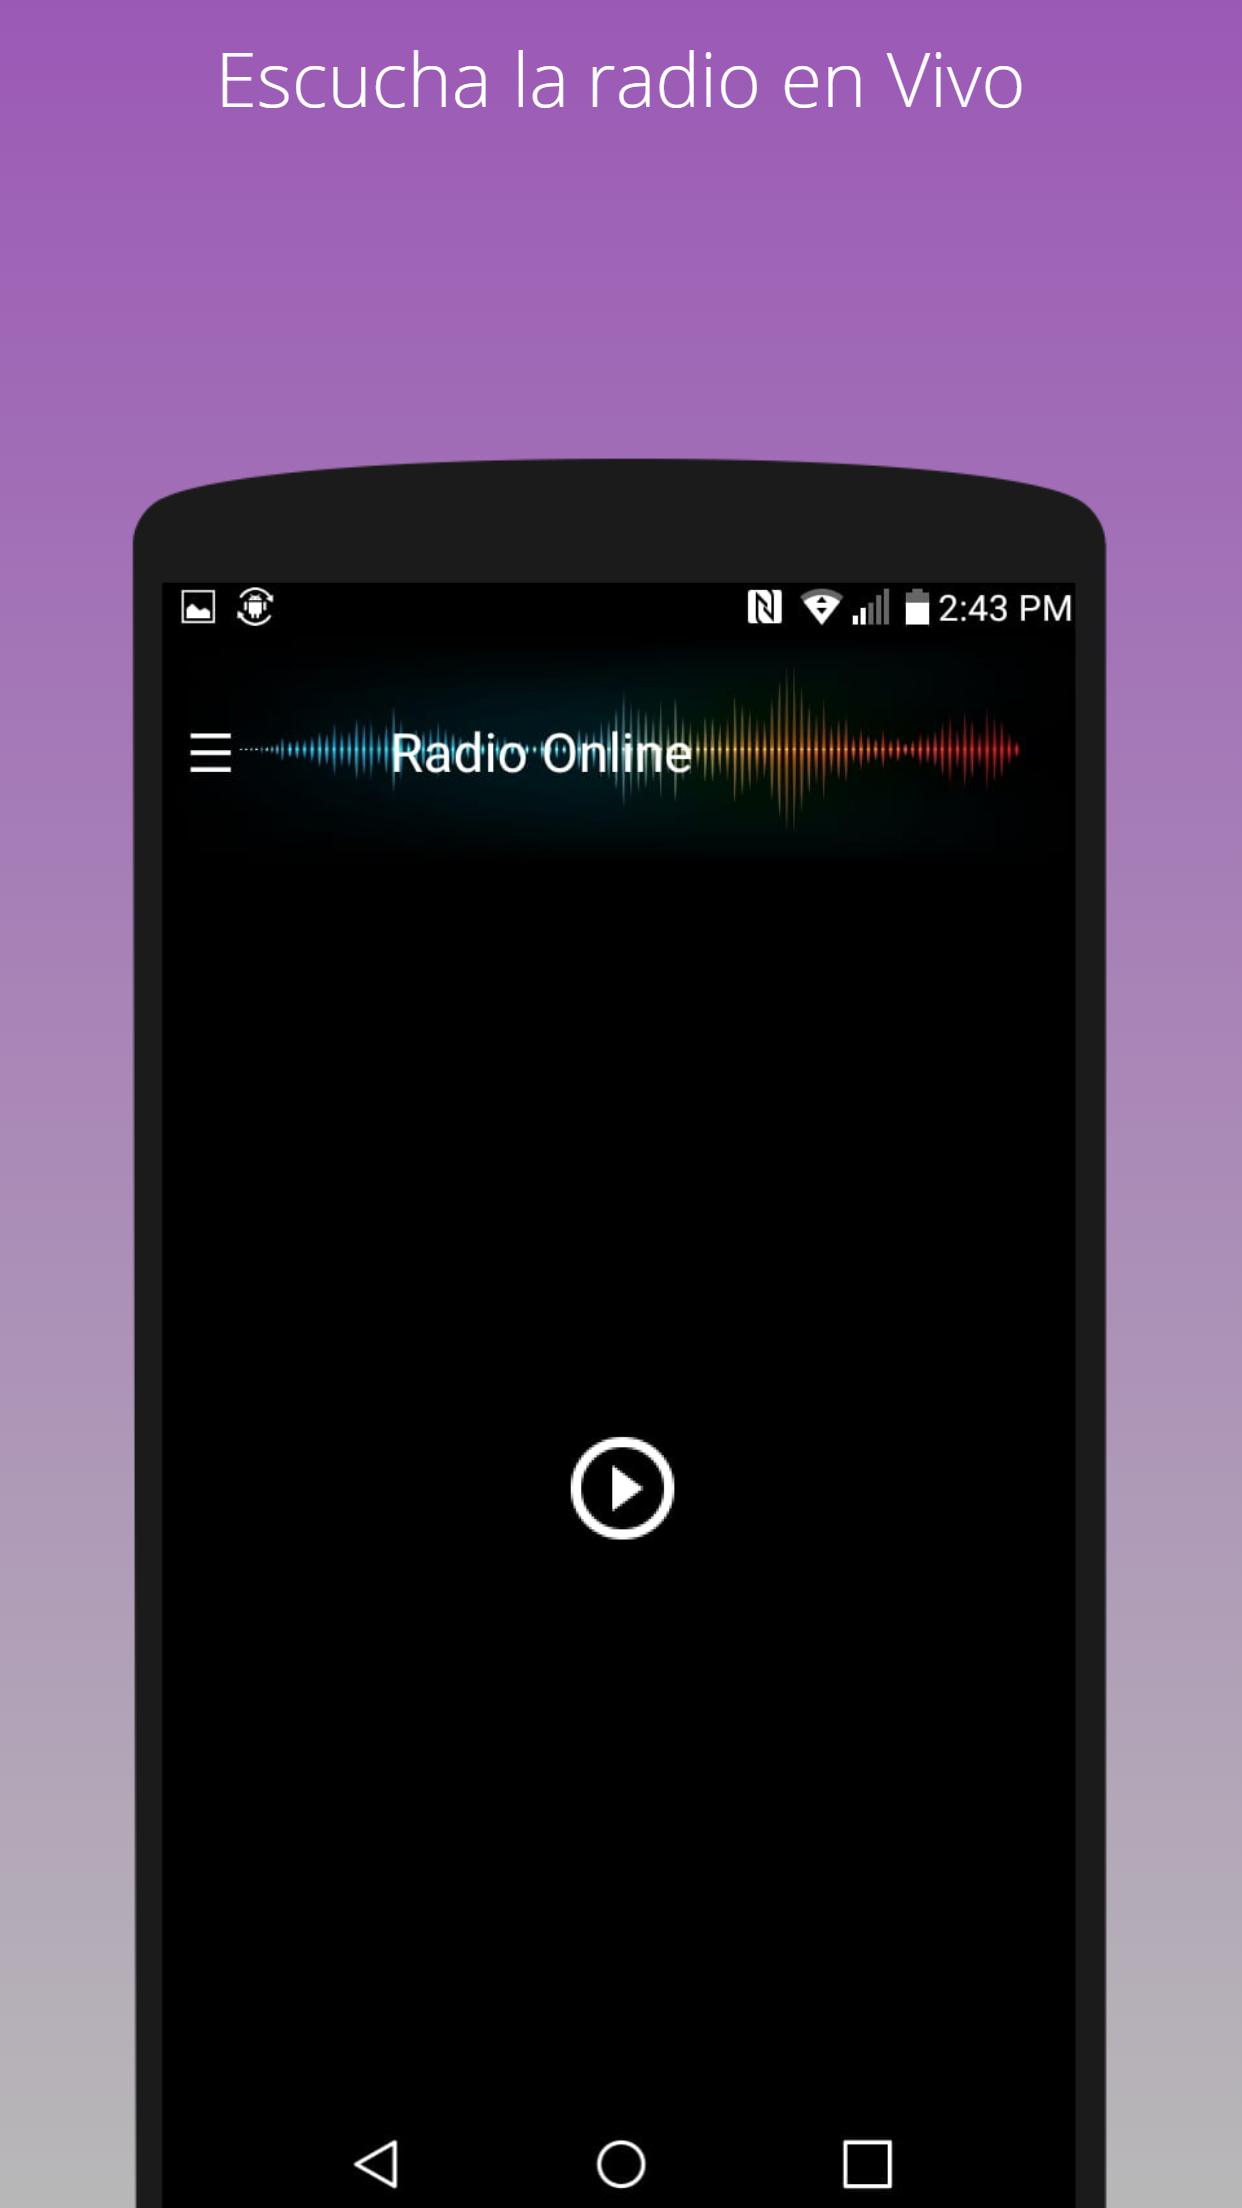 Radio La Ranchera 1050 AM en vivo emisora mexicana APK for Android Download